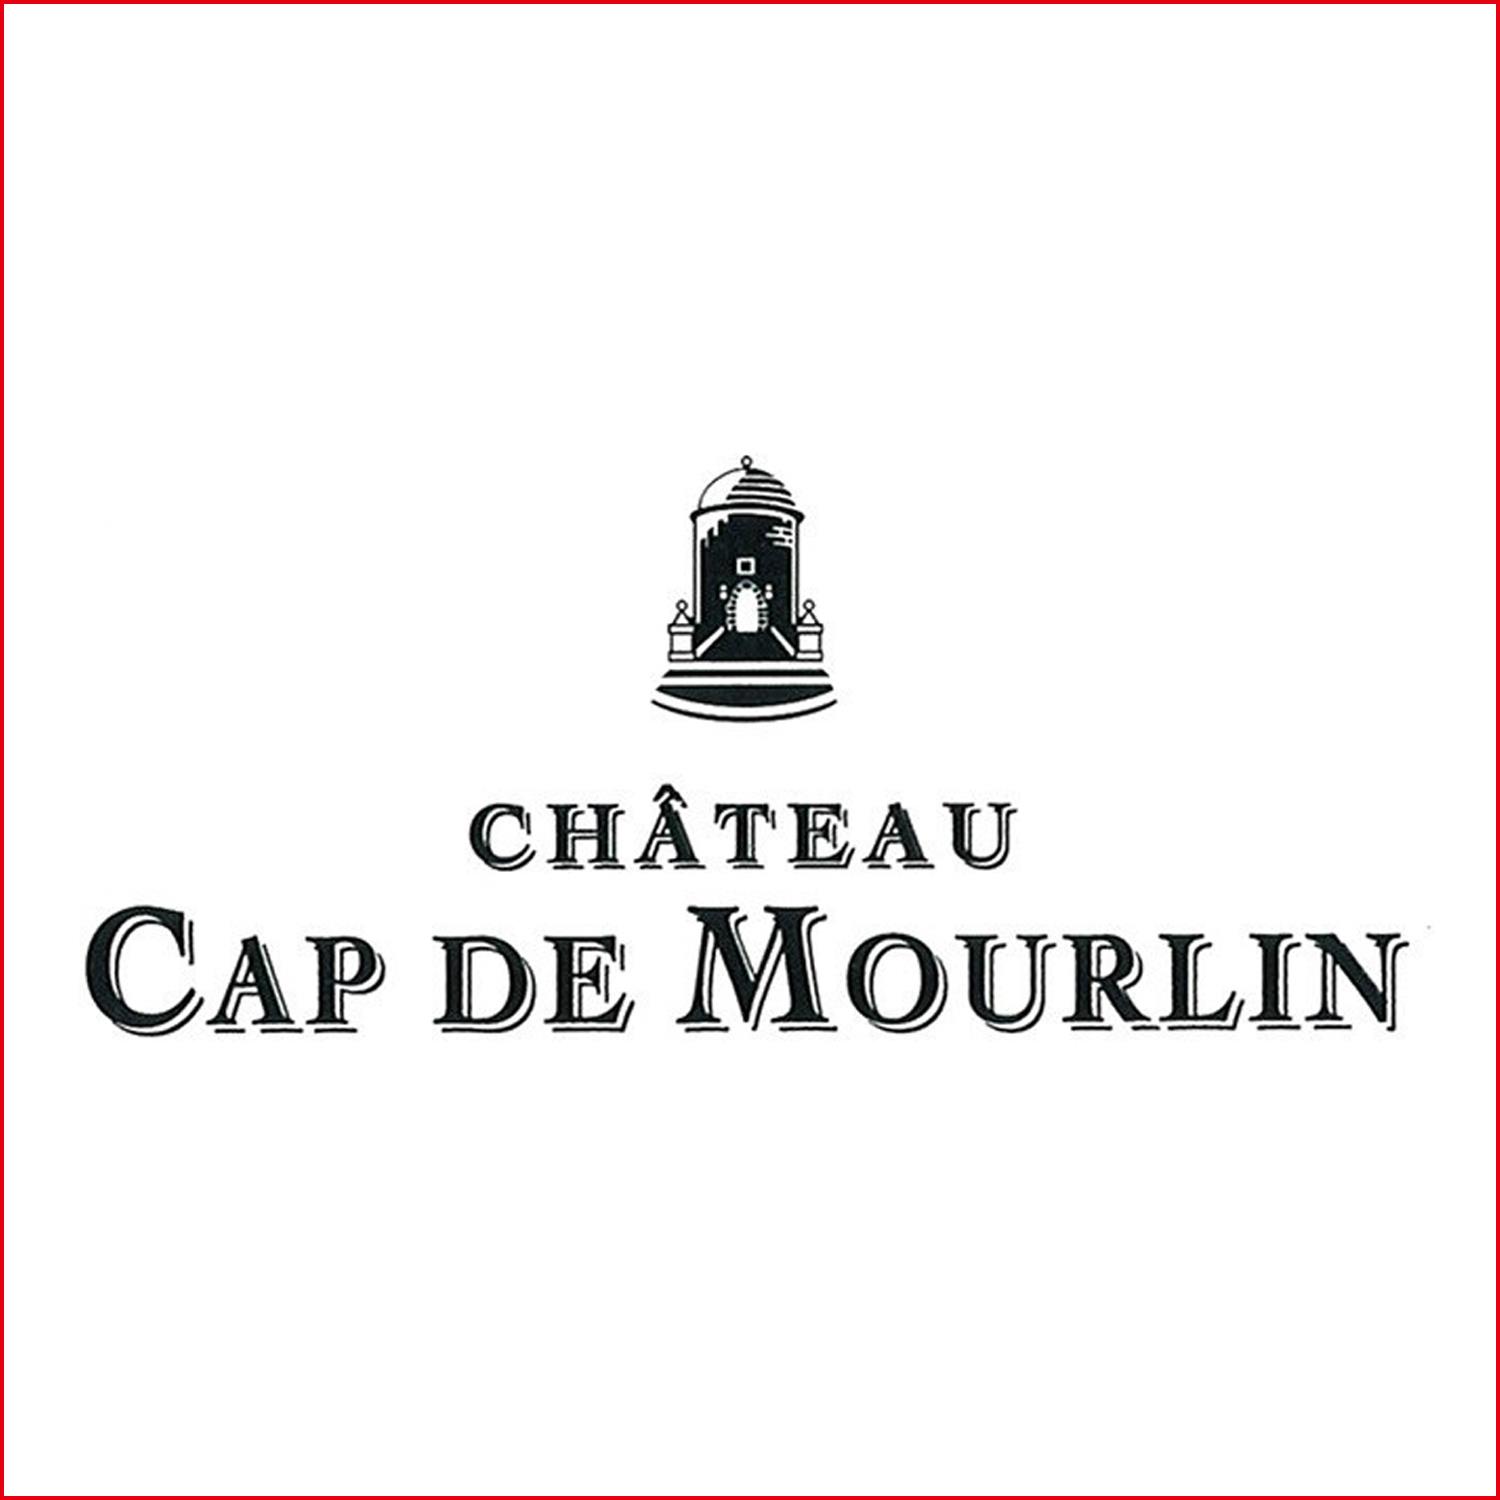 卡地慕蘭城堡 Chateau Cap de Mourlin